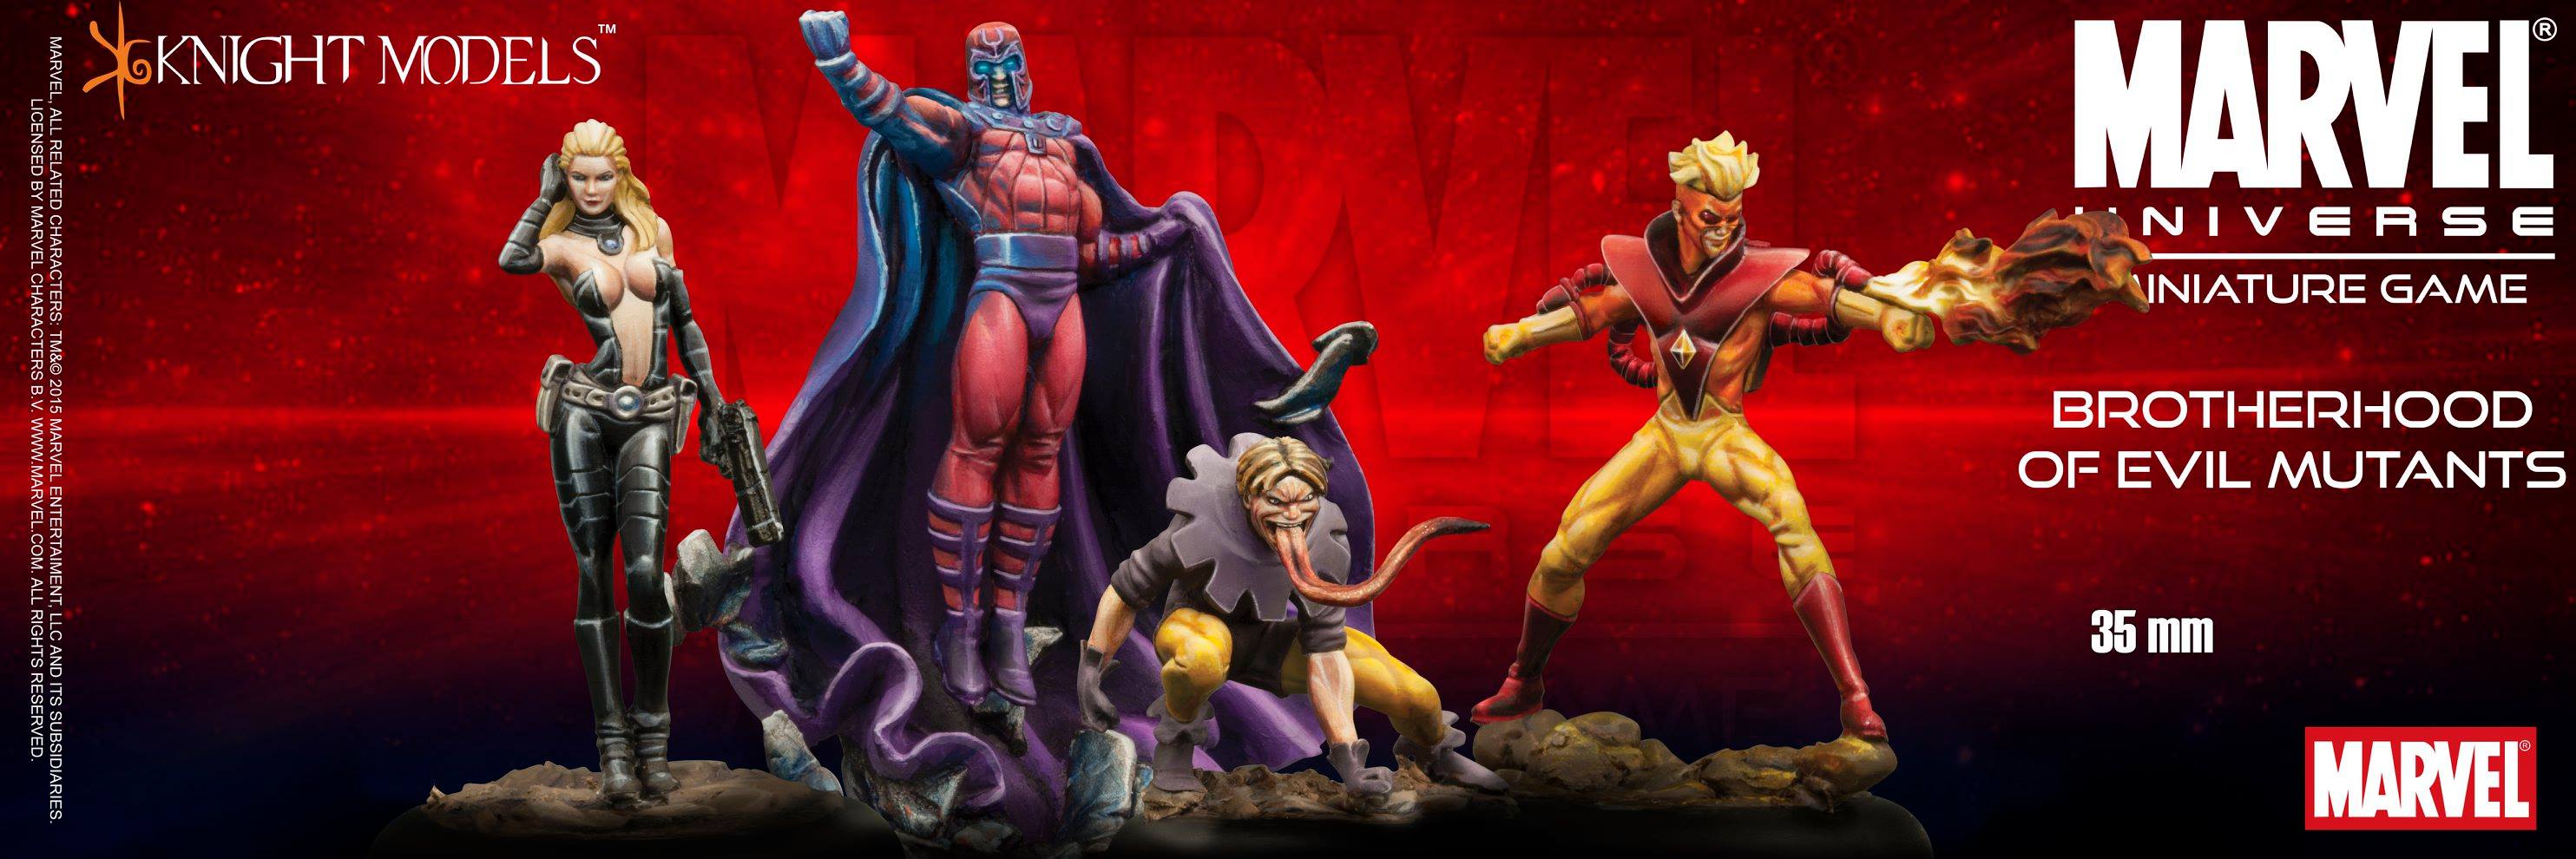 marvel-universe-miniature-game-brotherhood-of-evil-mutants